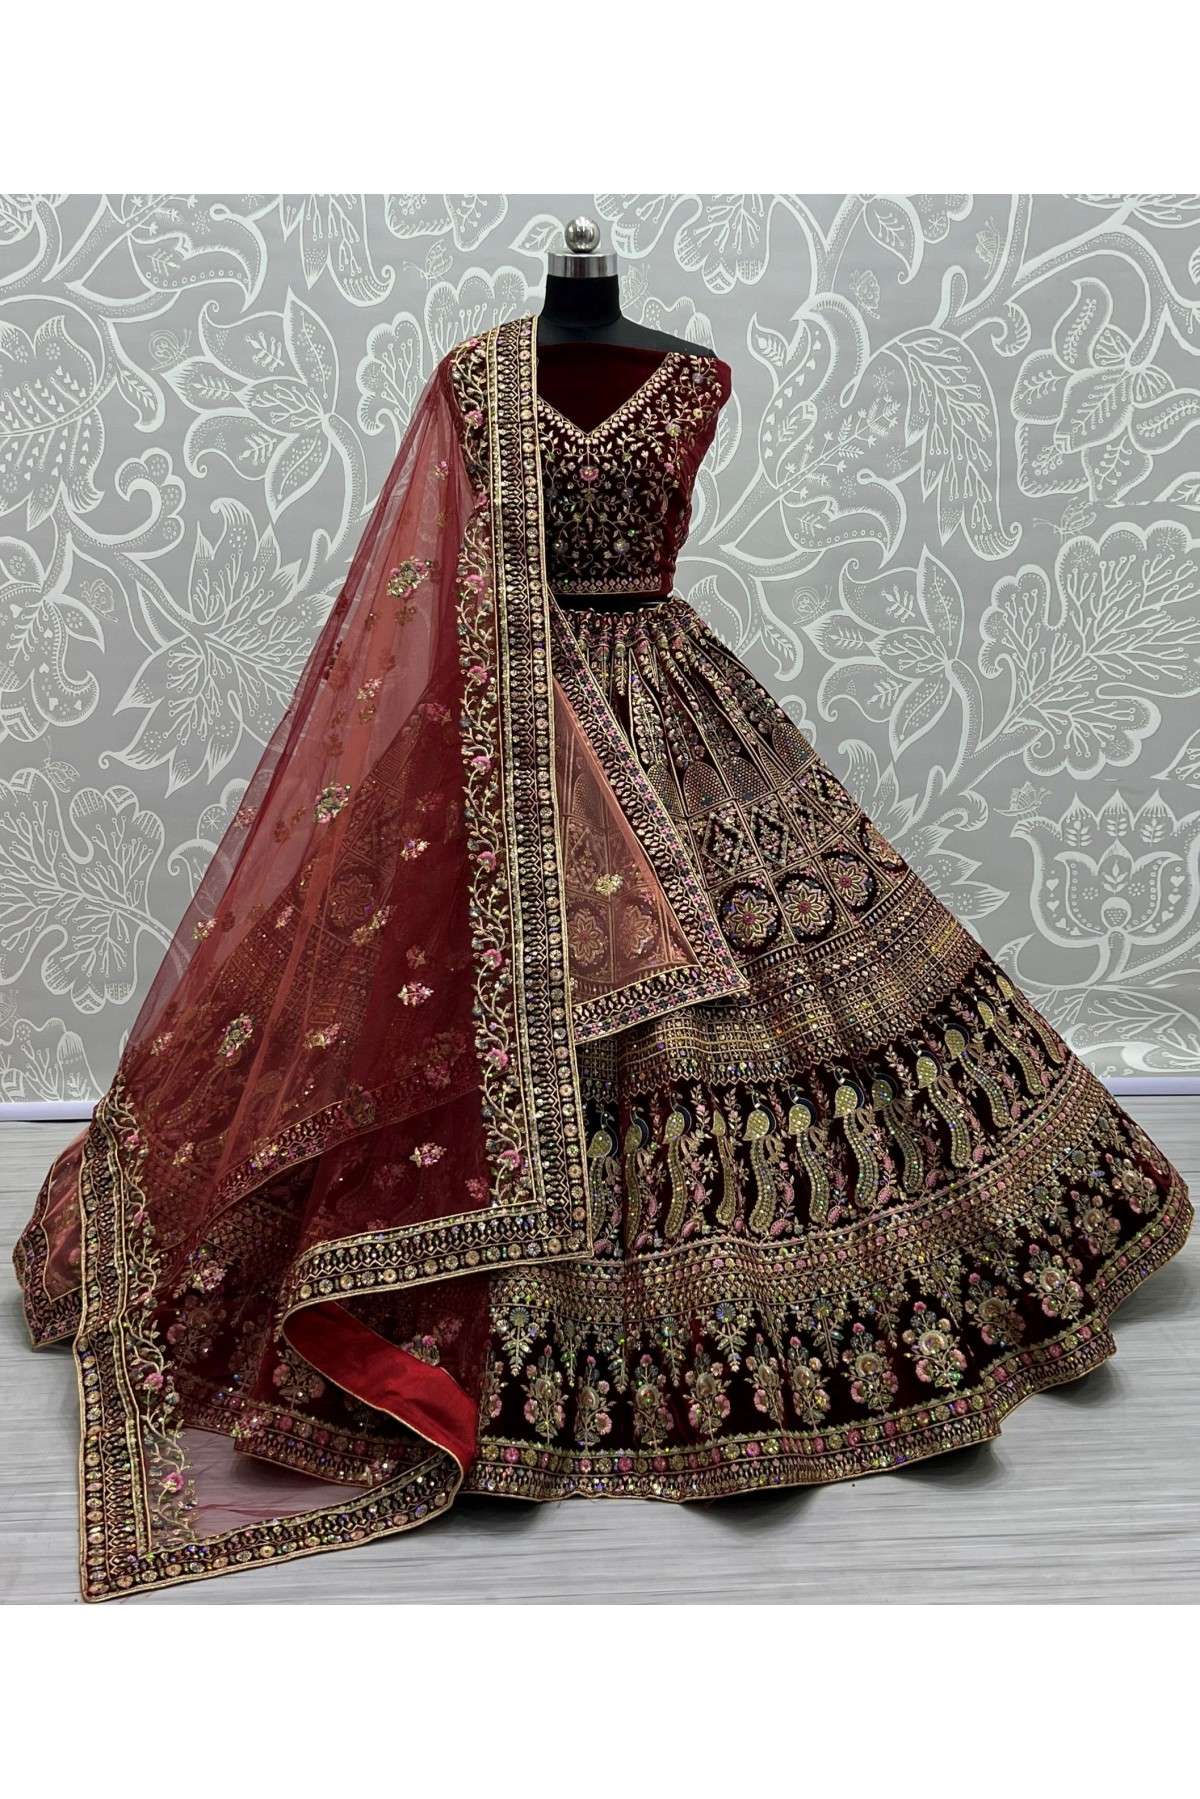 Velvet Embroidery Lehenga Choli In Maroon Colour - LD5416185